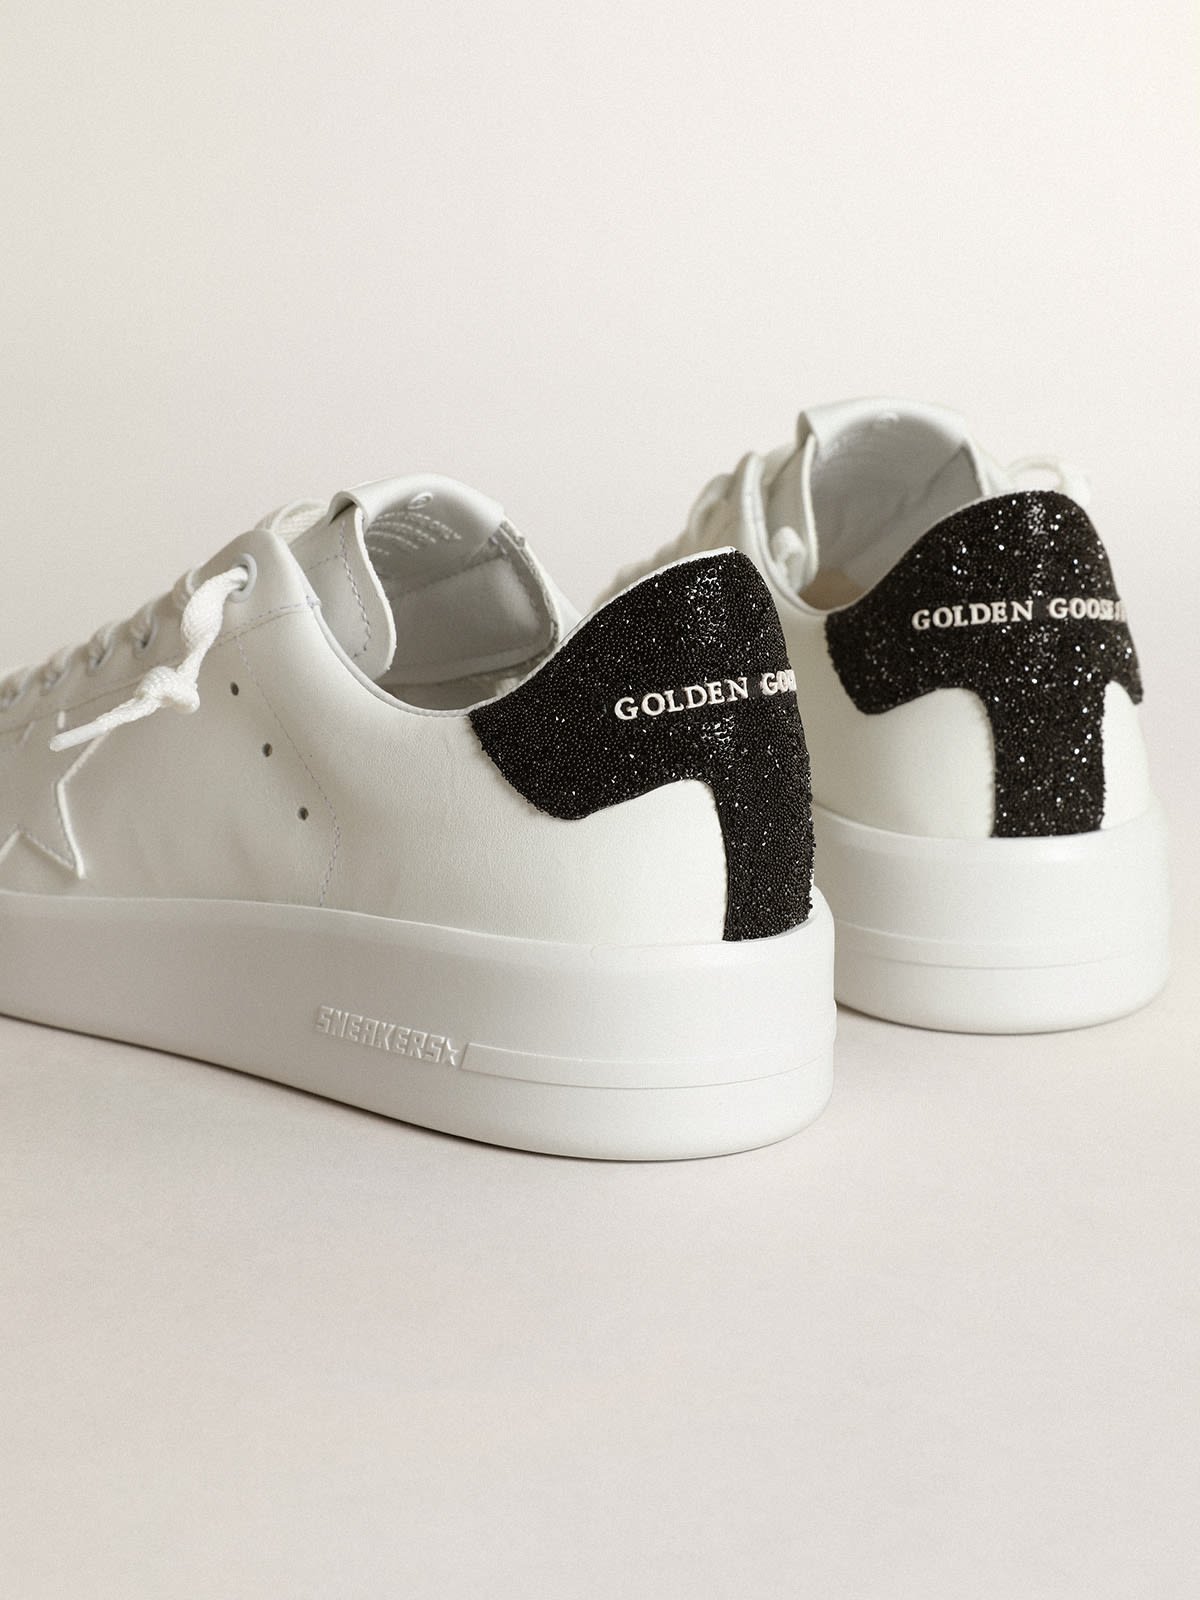 Golden Goose - Sneakers Purestar en cuir blanc avec étoile ton sur ton et contrefort en cristaux Swarovski noirs in 